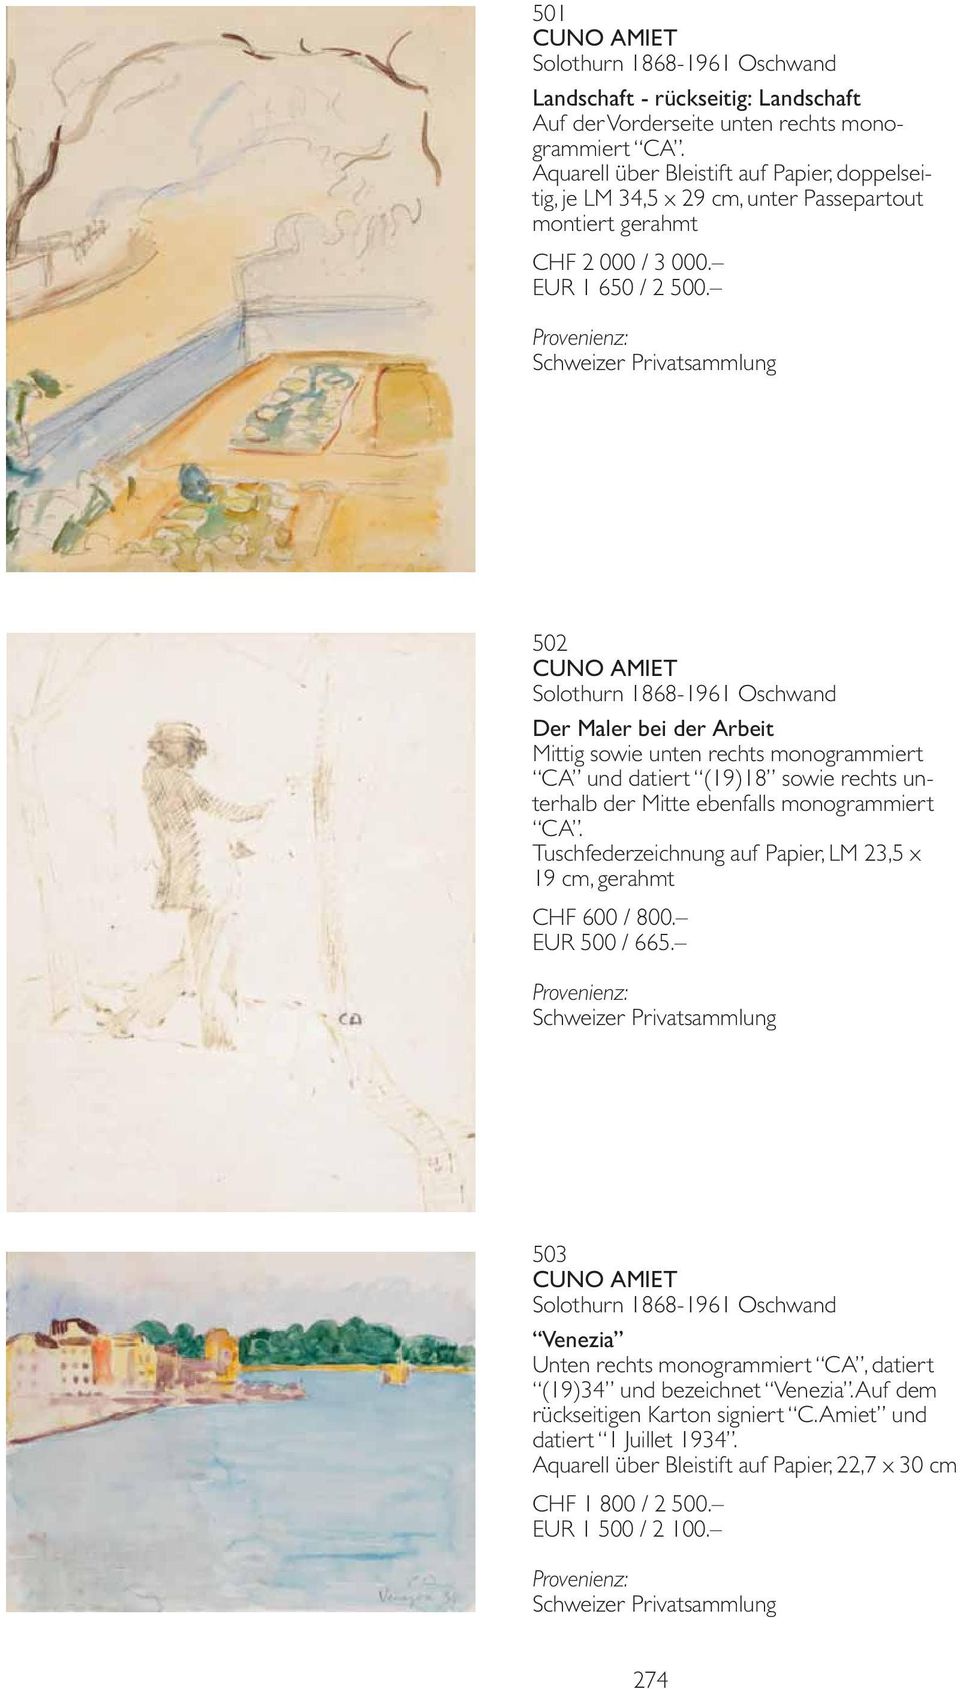 502 CUNO AMIET Solothurn 1868-1961 Oschwand Der Maler bei der Arbeit Mittig sowie unten rechts monogrammiert CA und datiert (19)18 sowie rechts unterhalb der Mitte ebenfalls monogrammiert CA.